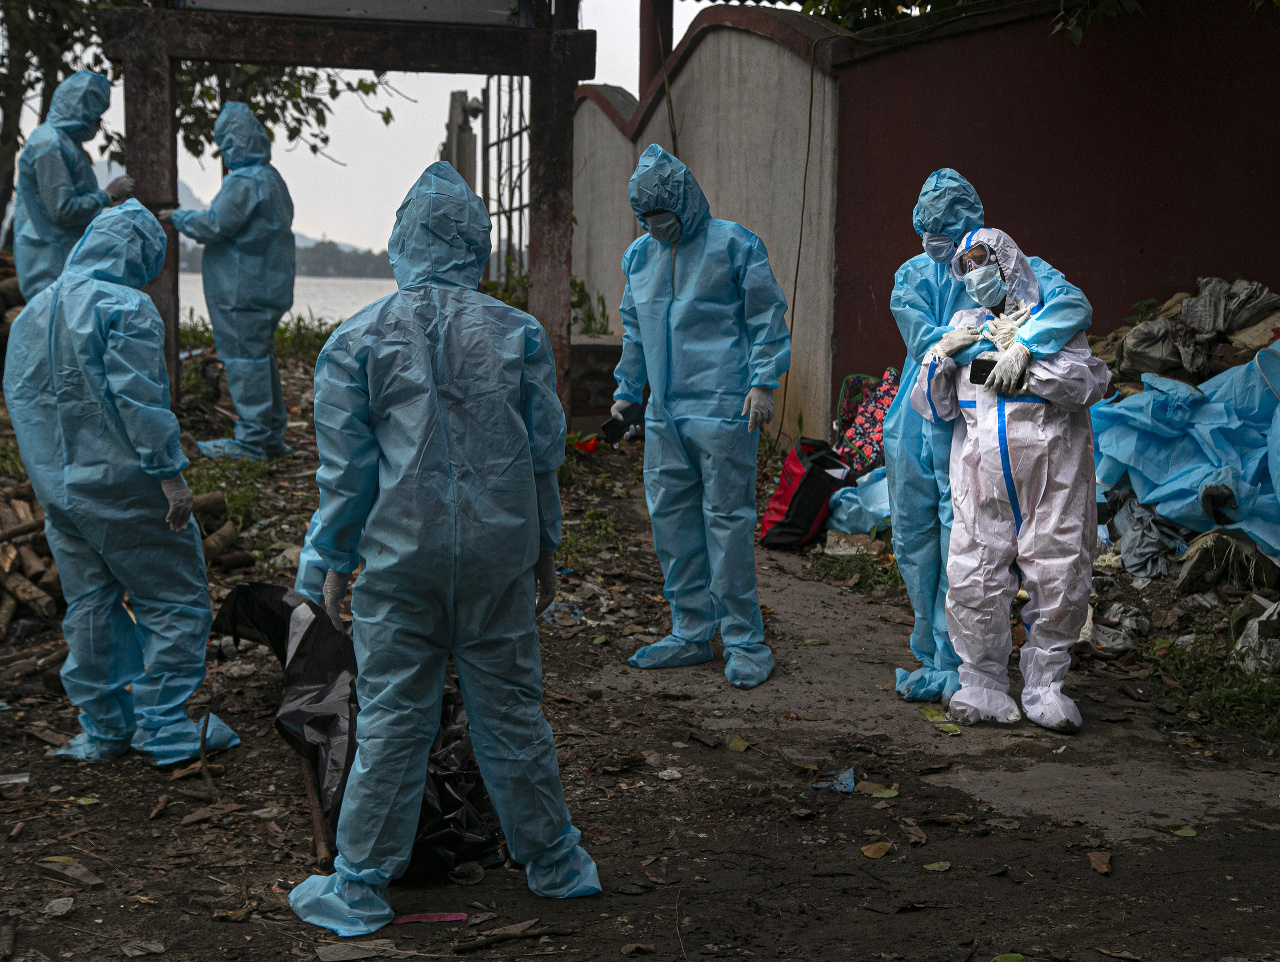 Žena v bielom ochrannom oblečení reaguje po tom, čo videla telo svojho manžela, obete koronavírusu v indickom meste Gauháti.